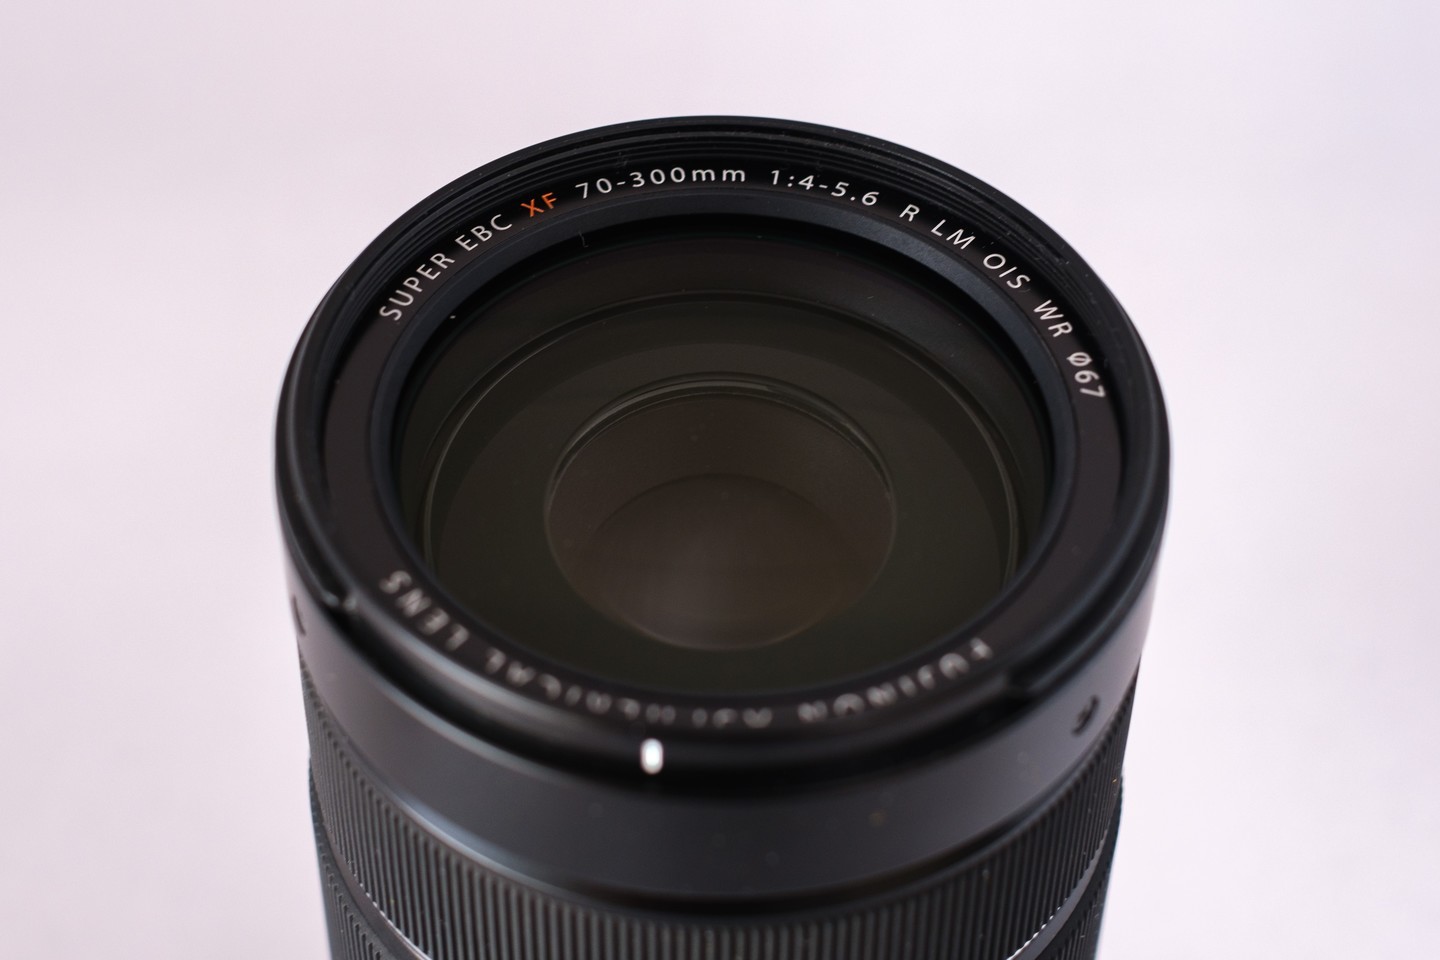 新品 フジ XF 70-300ｍｍ カメラのキタムラ購入 1年保証 送料無料